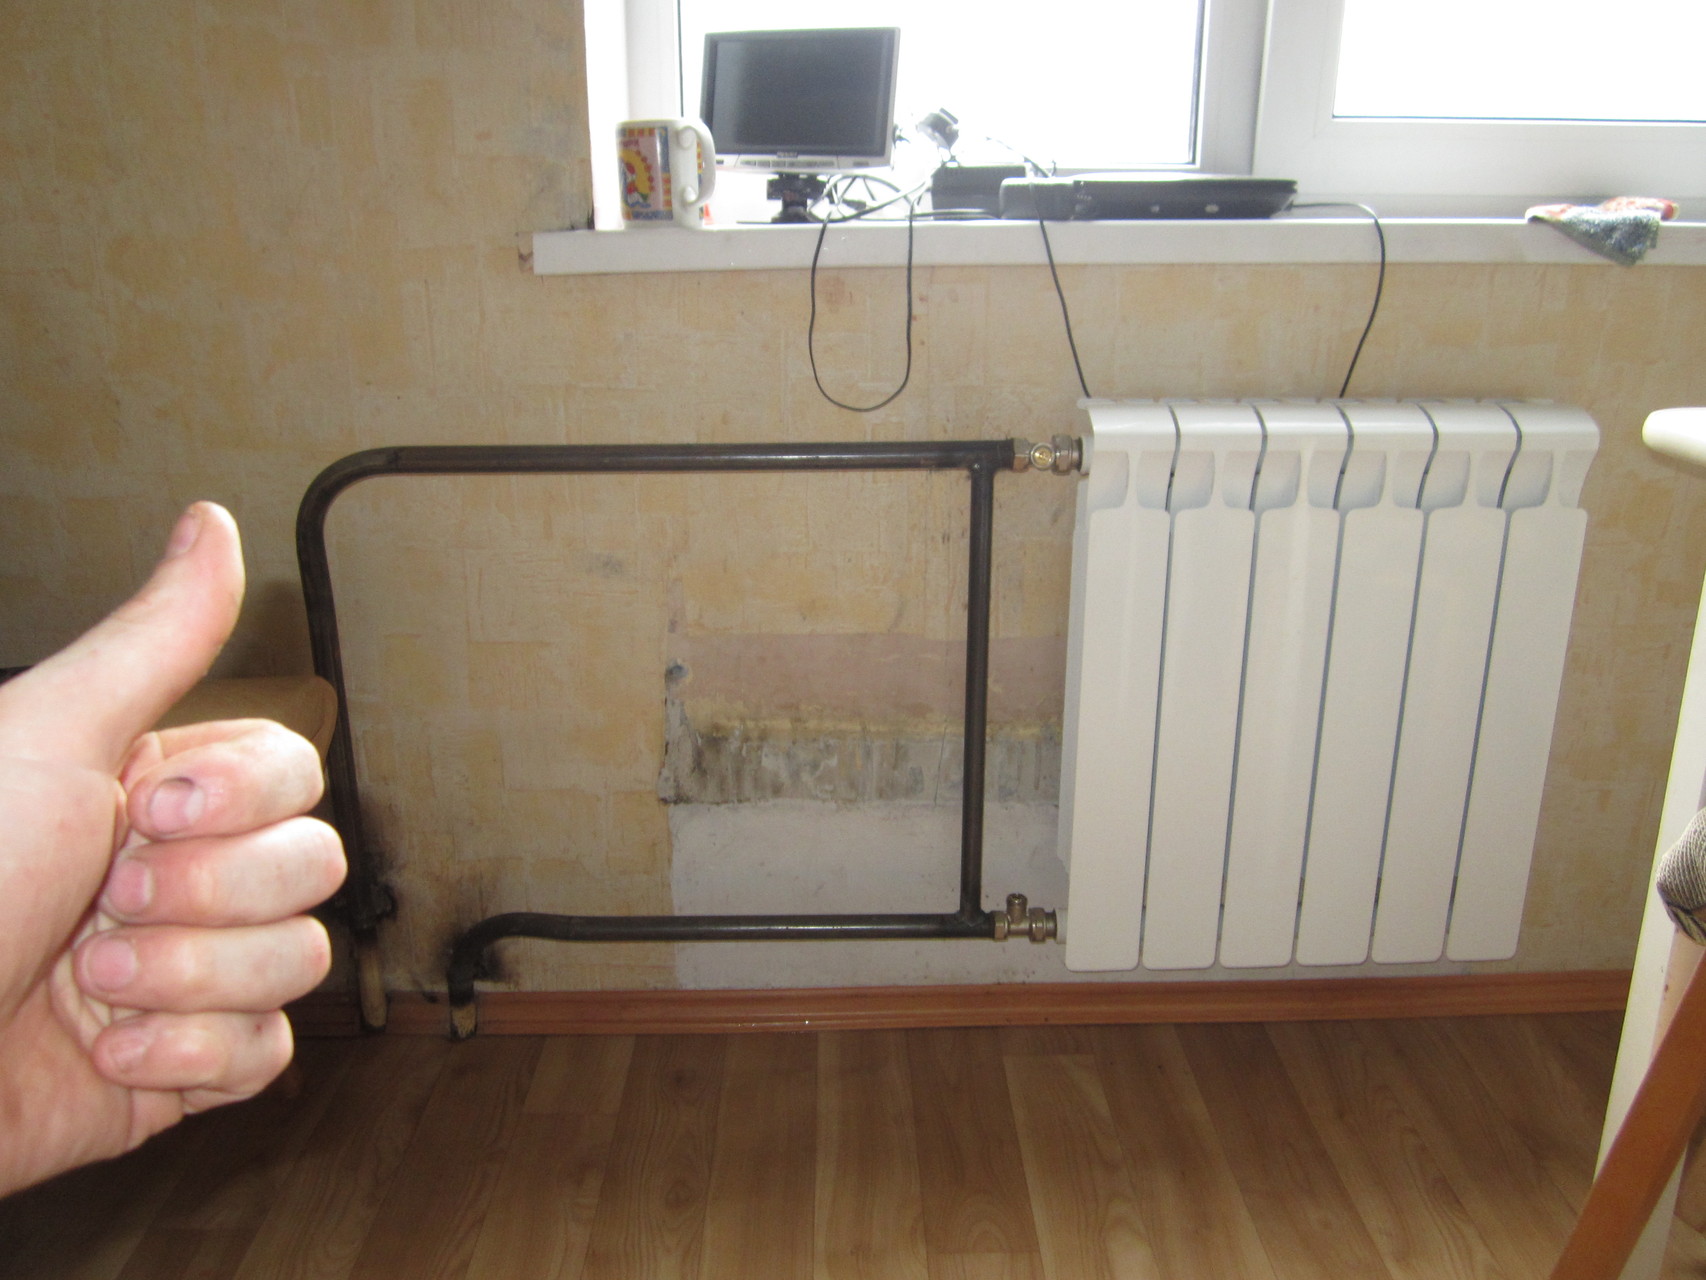 Замена батарей отопления в квартире: когда нужно делать переделку системы, деятельность жэка при замене и установке радиаторов в многоквартирном доме